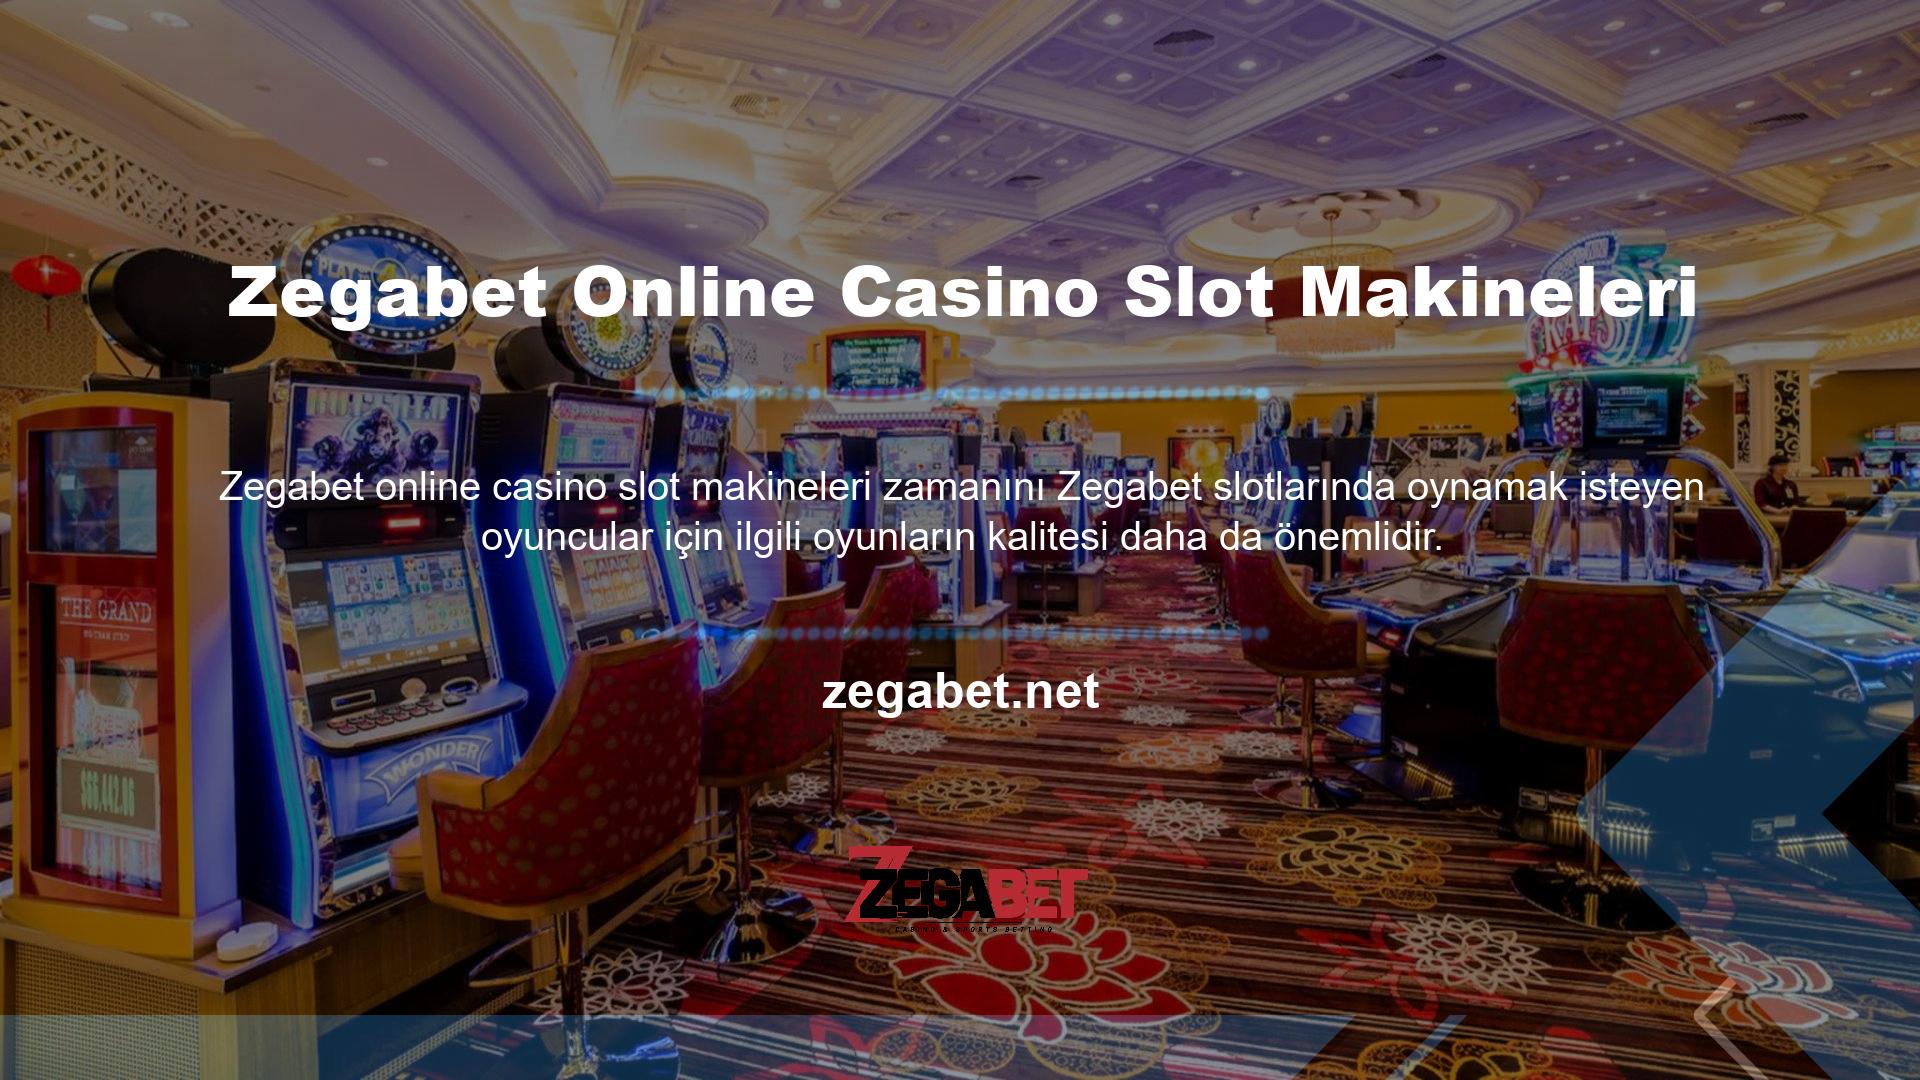 Zegabet Online Casino, en popüler profesyonel slot oyuncularından biridir ve bu alandaki yeni başlayanlar, slot seçerken grafik ve animasyon kalitesi gibi faktörleri göz önünde bulundurur